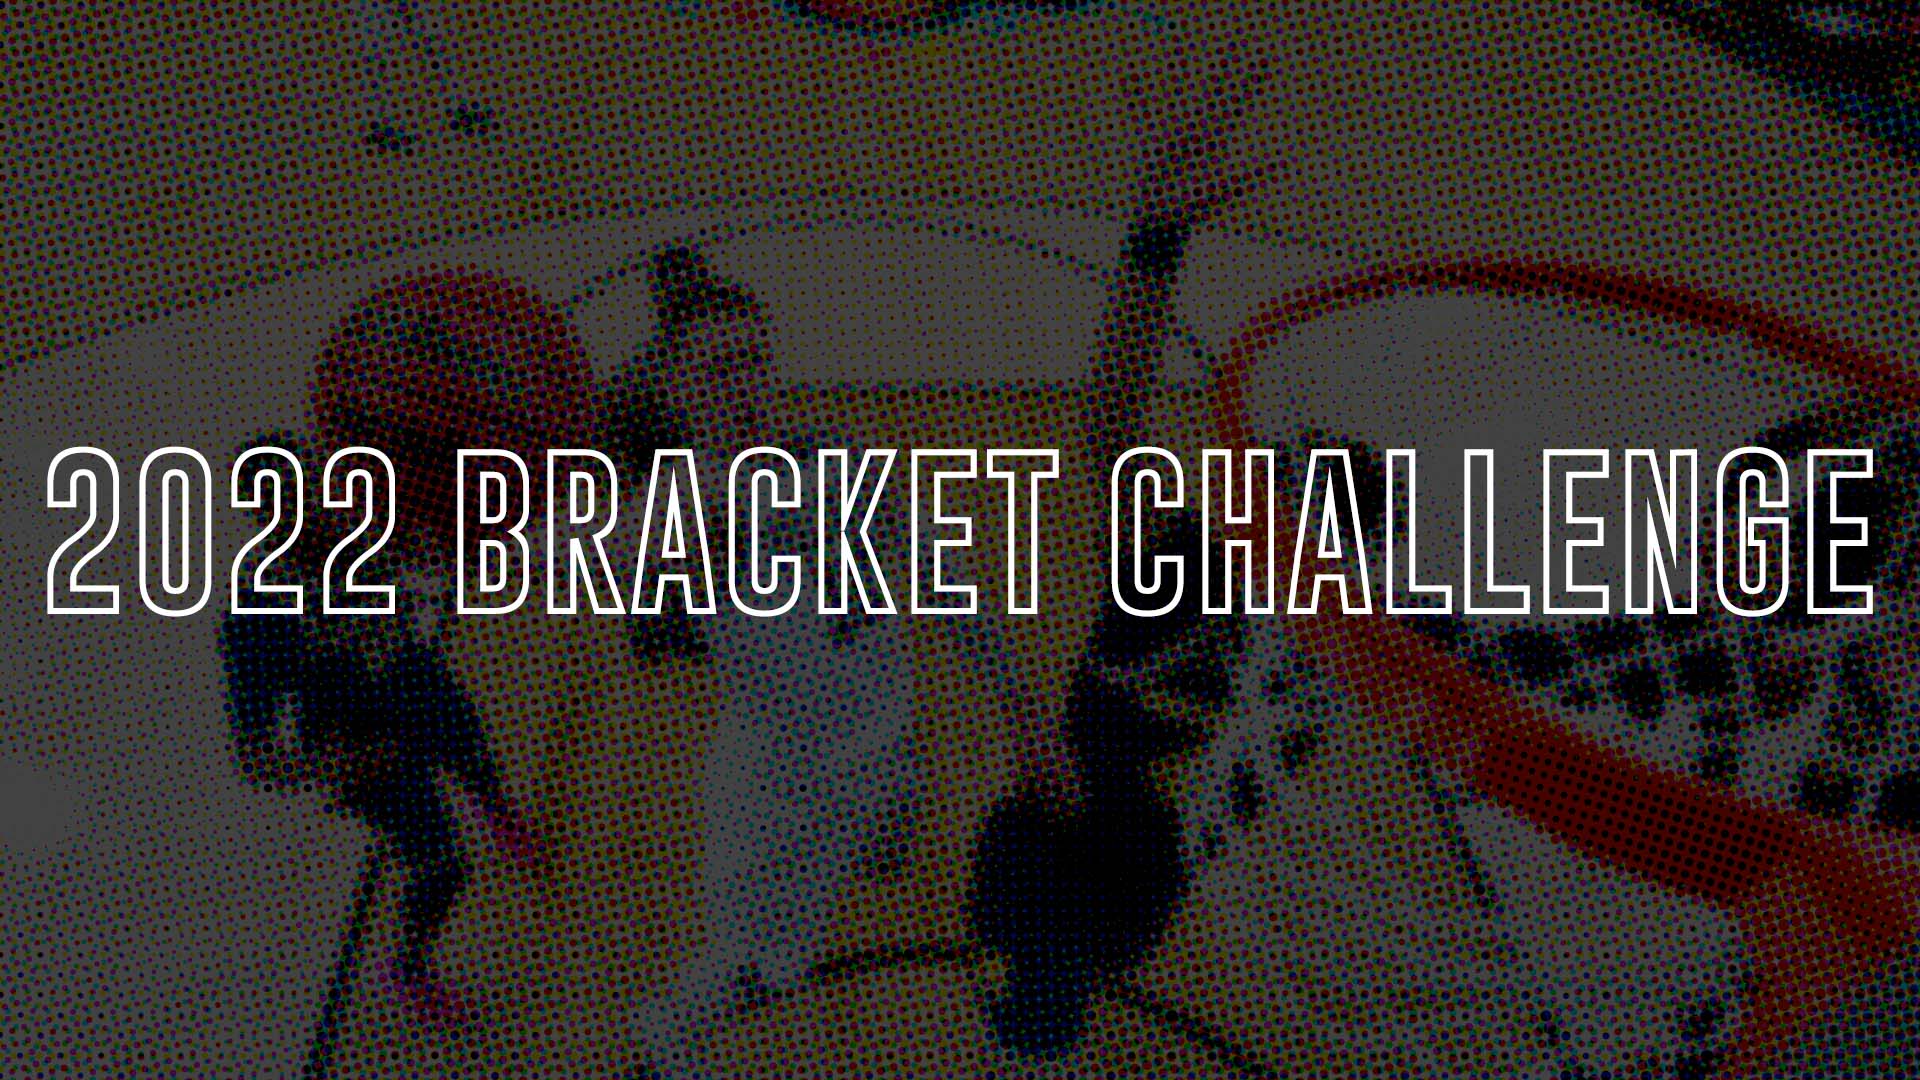 2022 Basketball Bracket Challenge